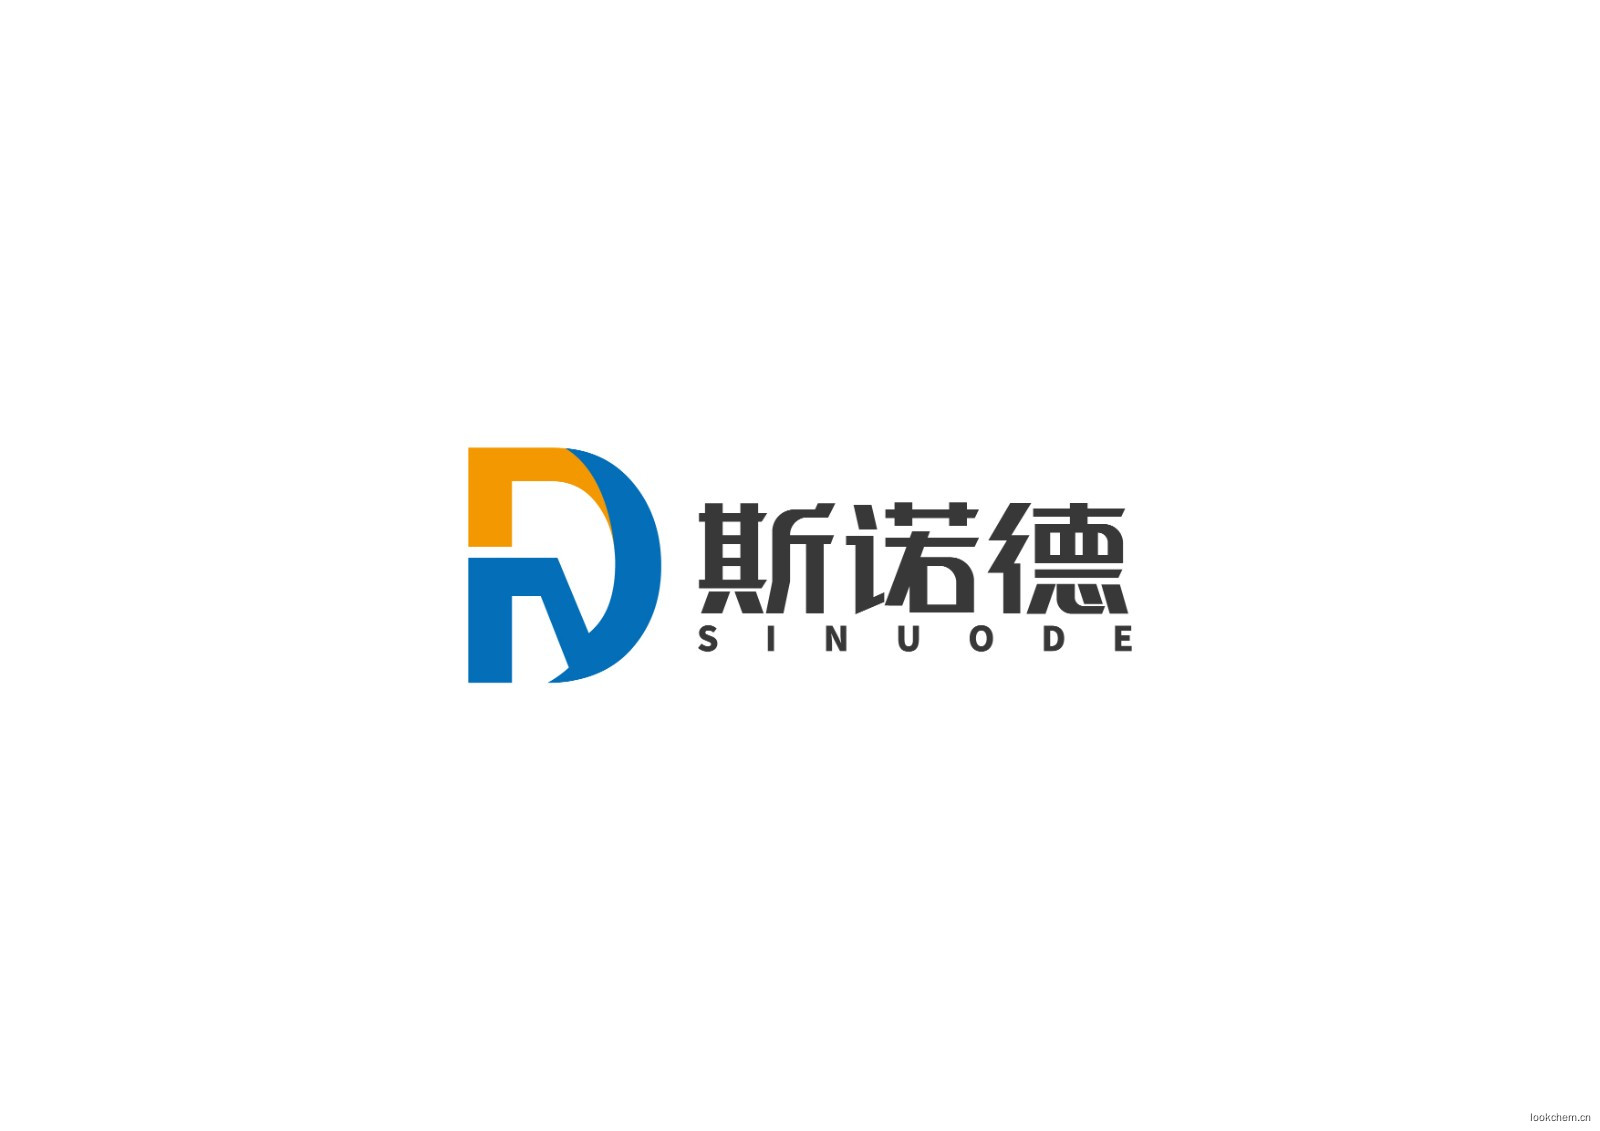 四川省斯诺德化工科技有限责任公司